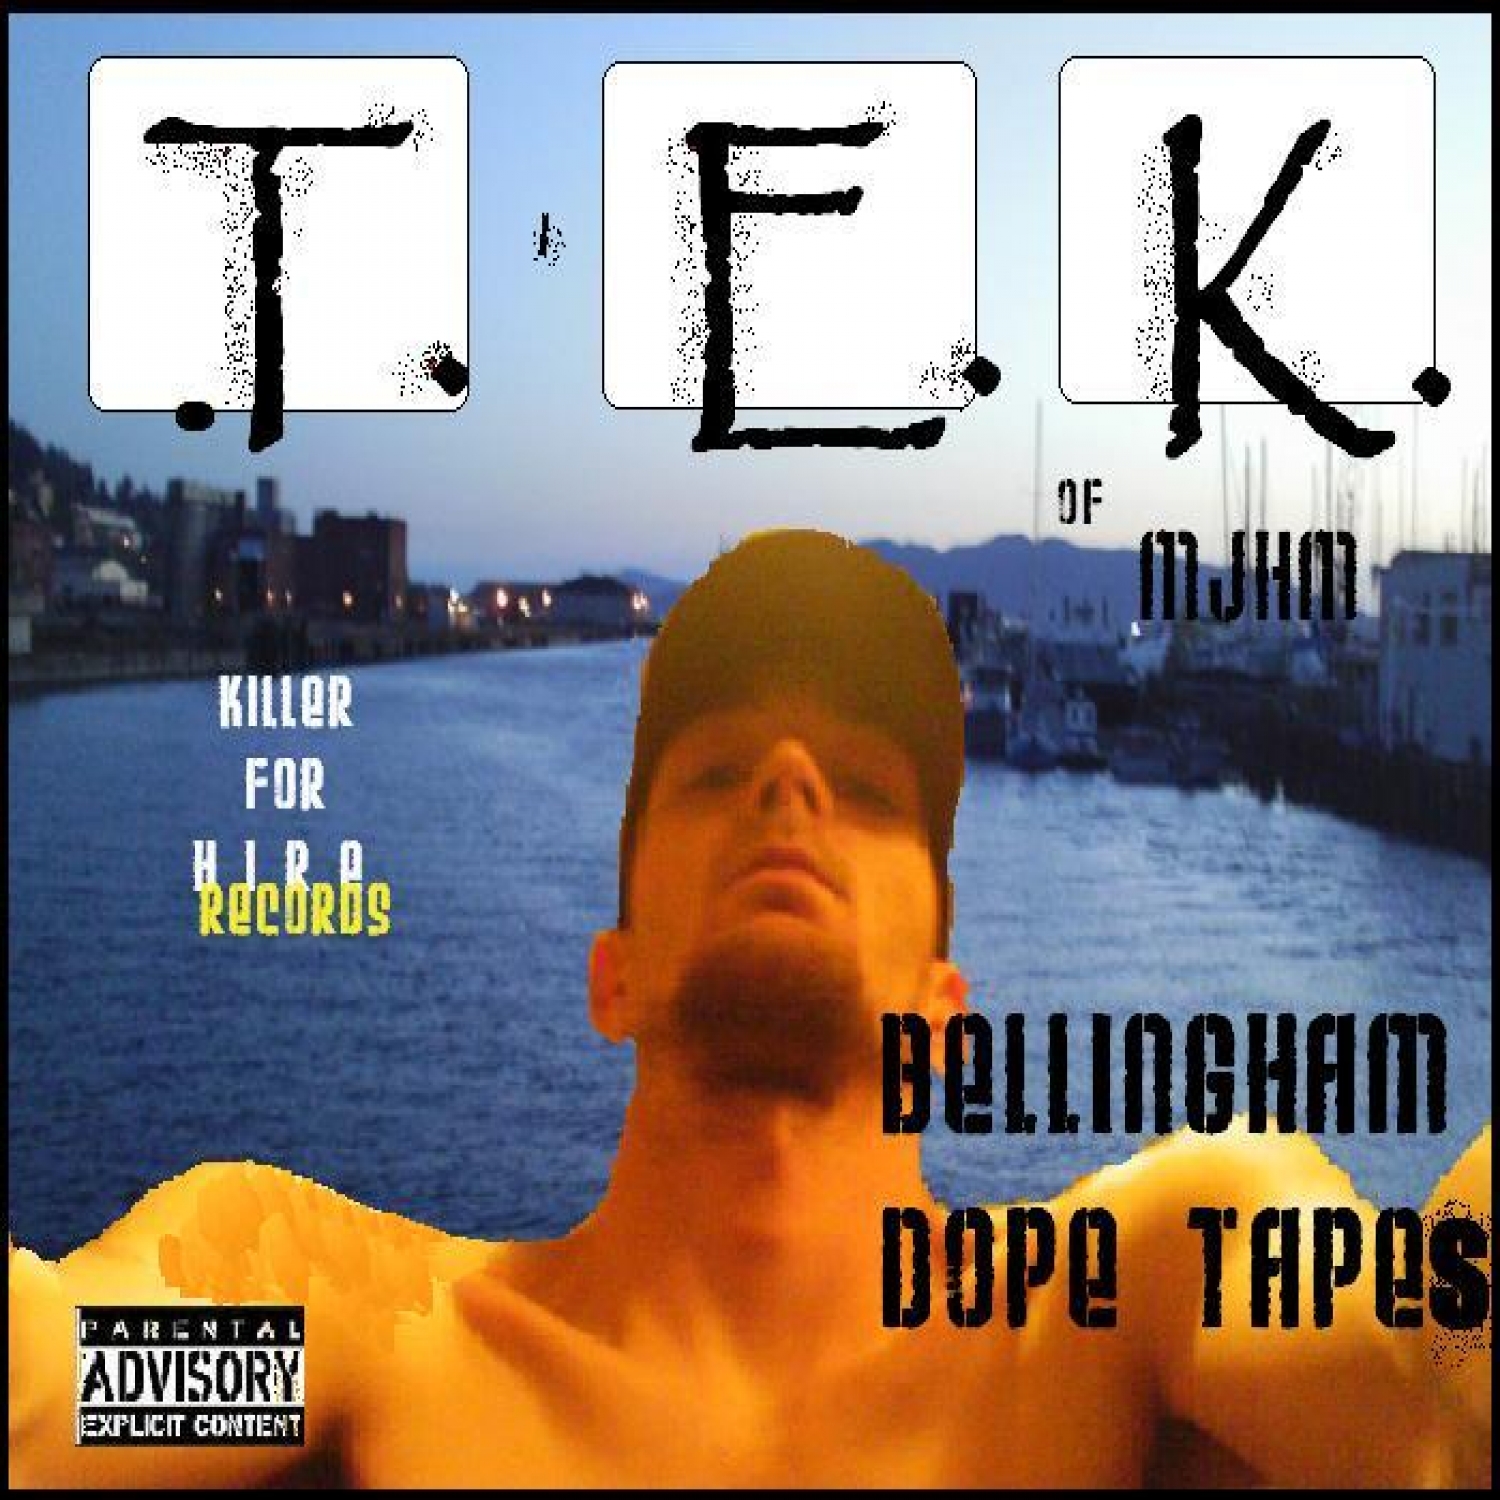 Bellingham Dope Tapes